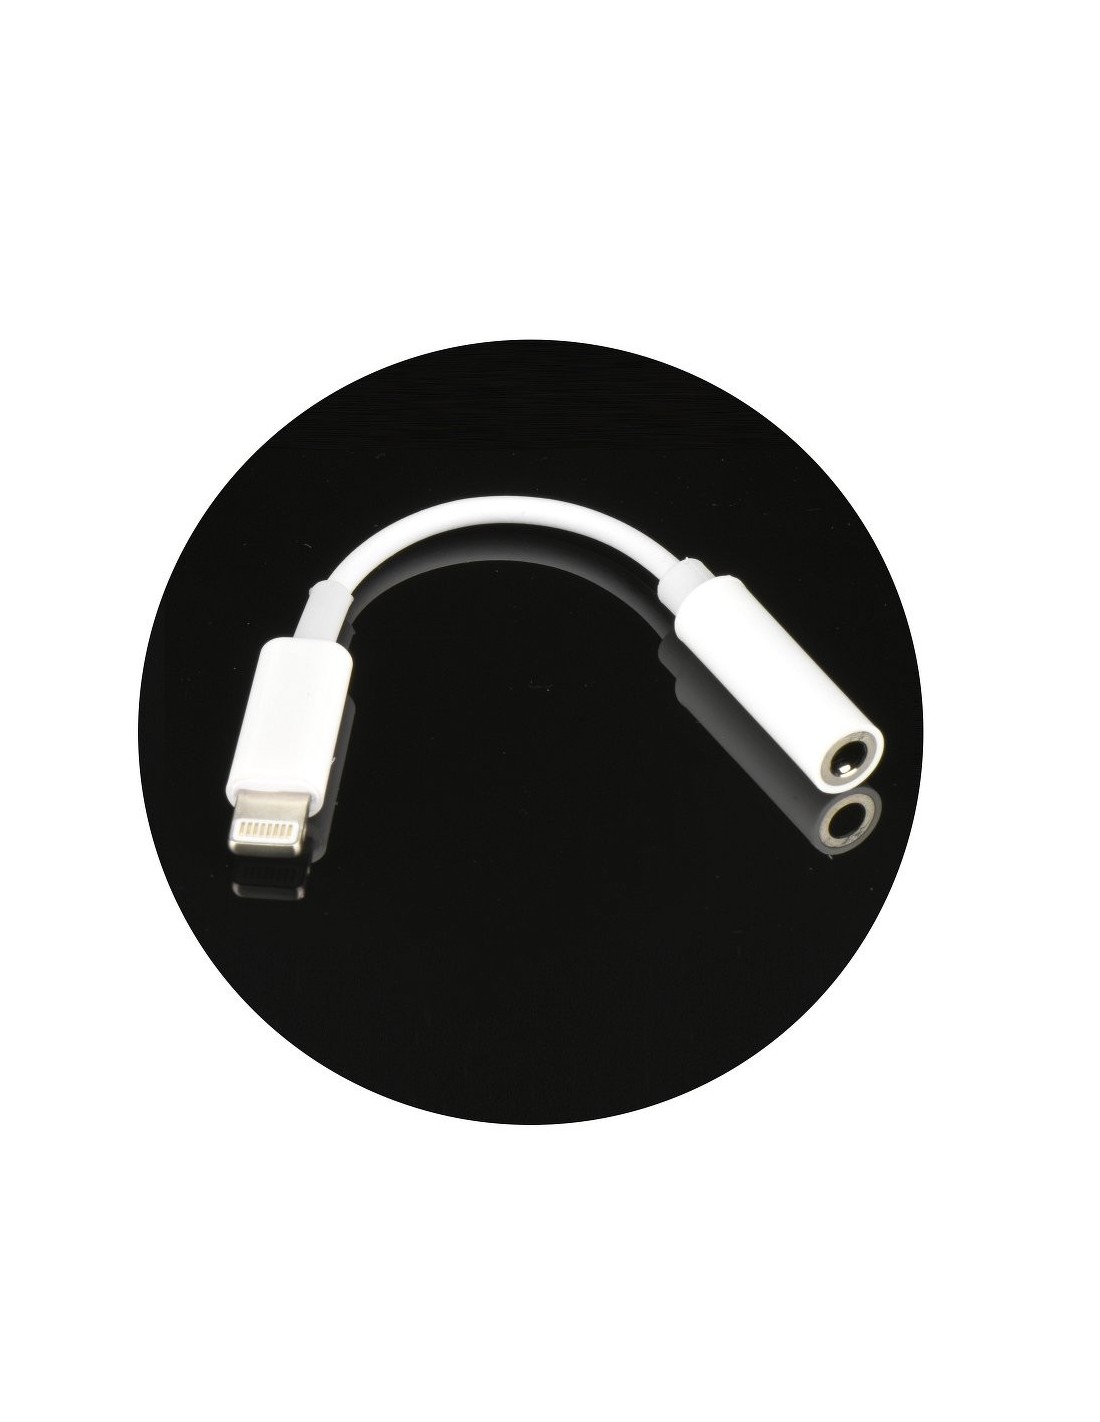 Adaptateur ecouteur iPhone, 4 en 1 Adaptateur Casque pour iPhone Double  Prise Lighting vers Ecouteurs de 3,5 mm, Compatible avec iPhone